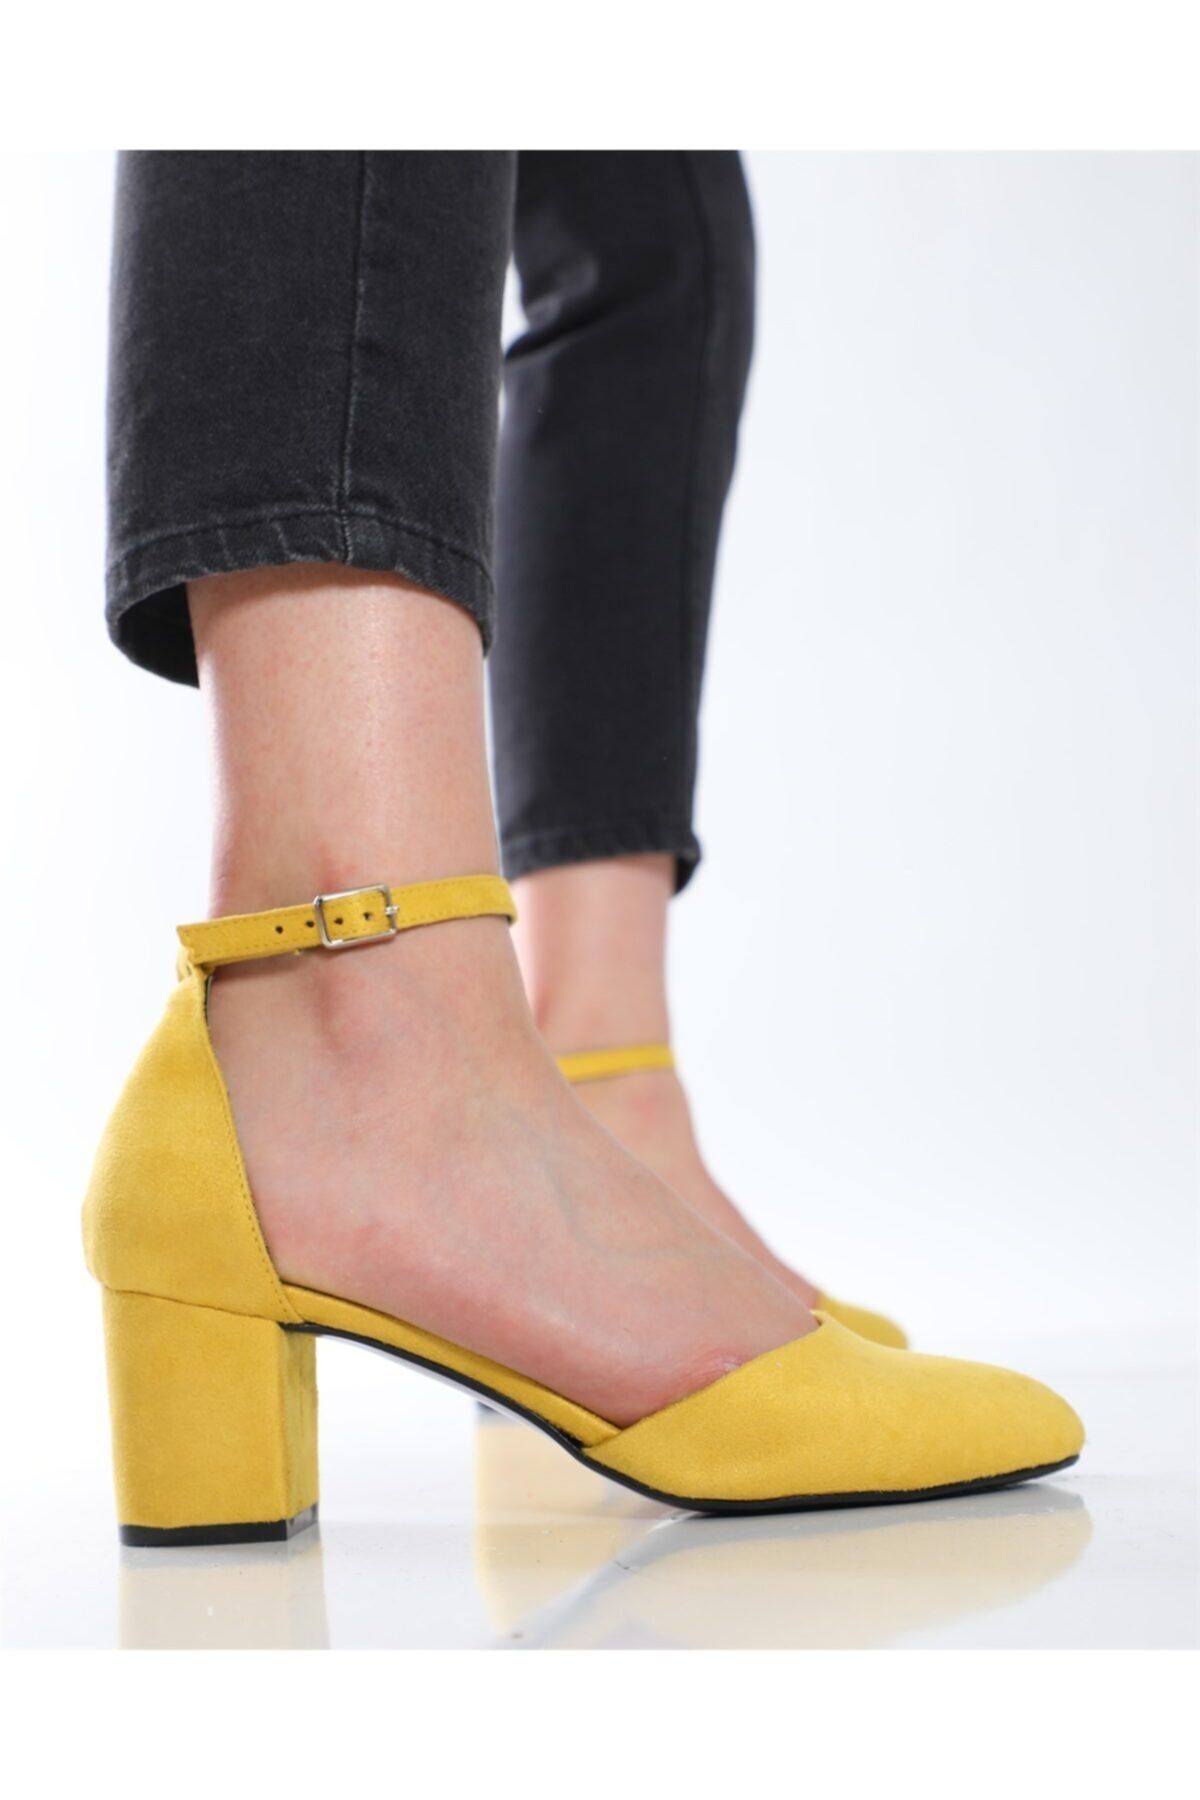 Nizar Deniz Lona Sarı Topuklu Ayakkabı